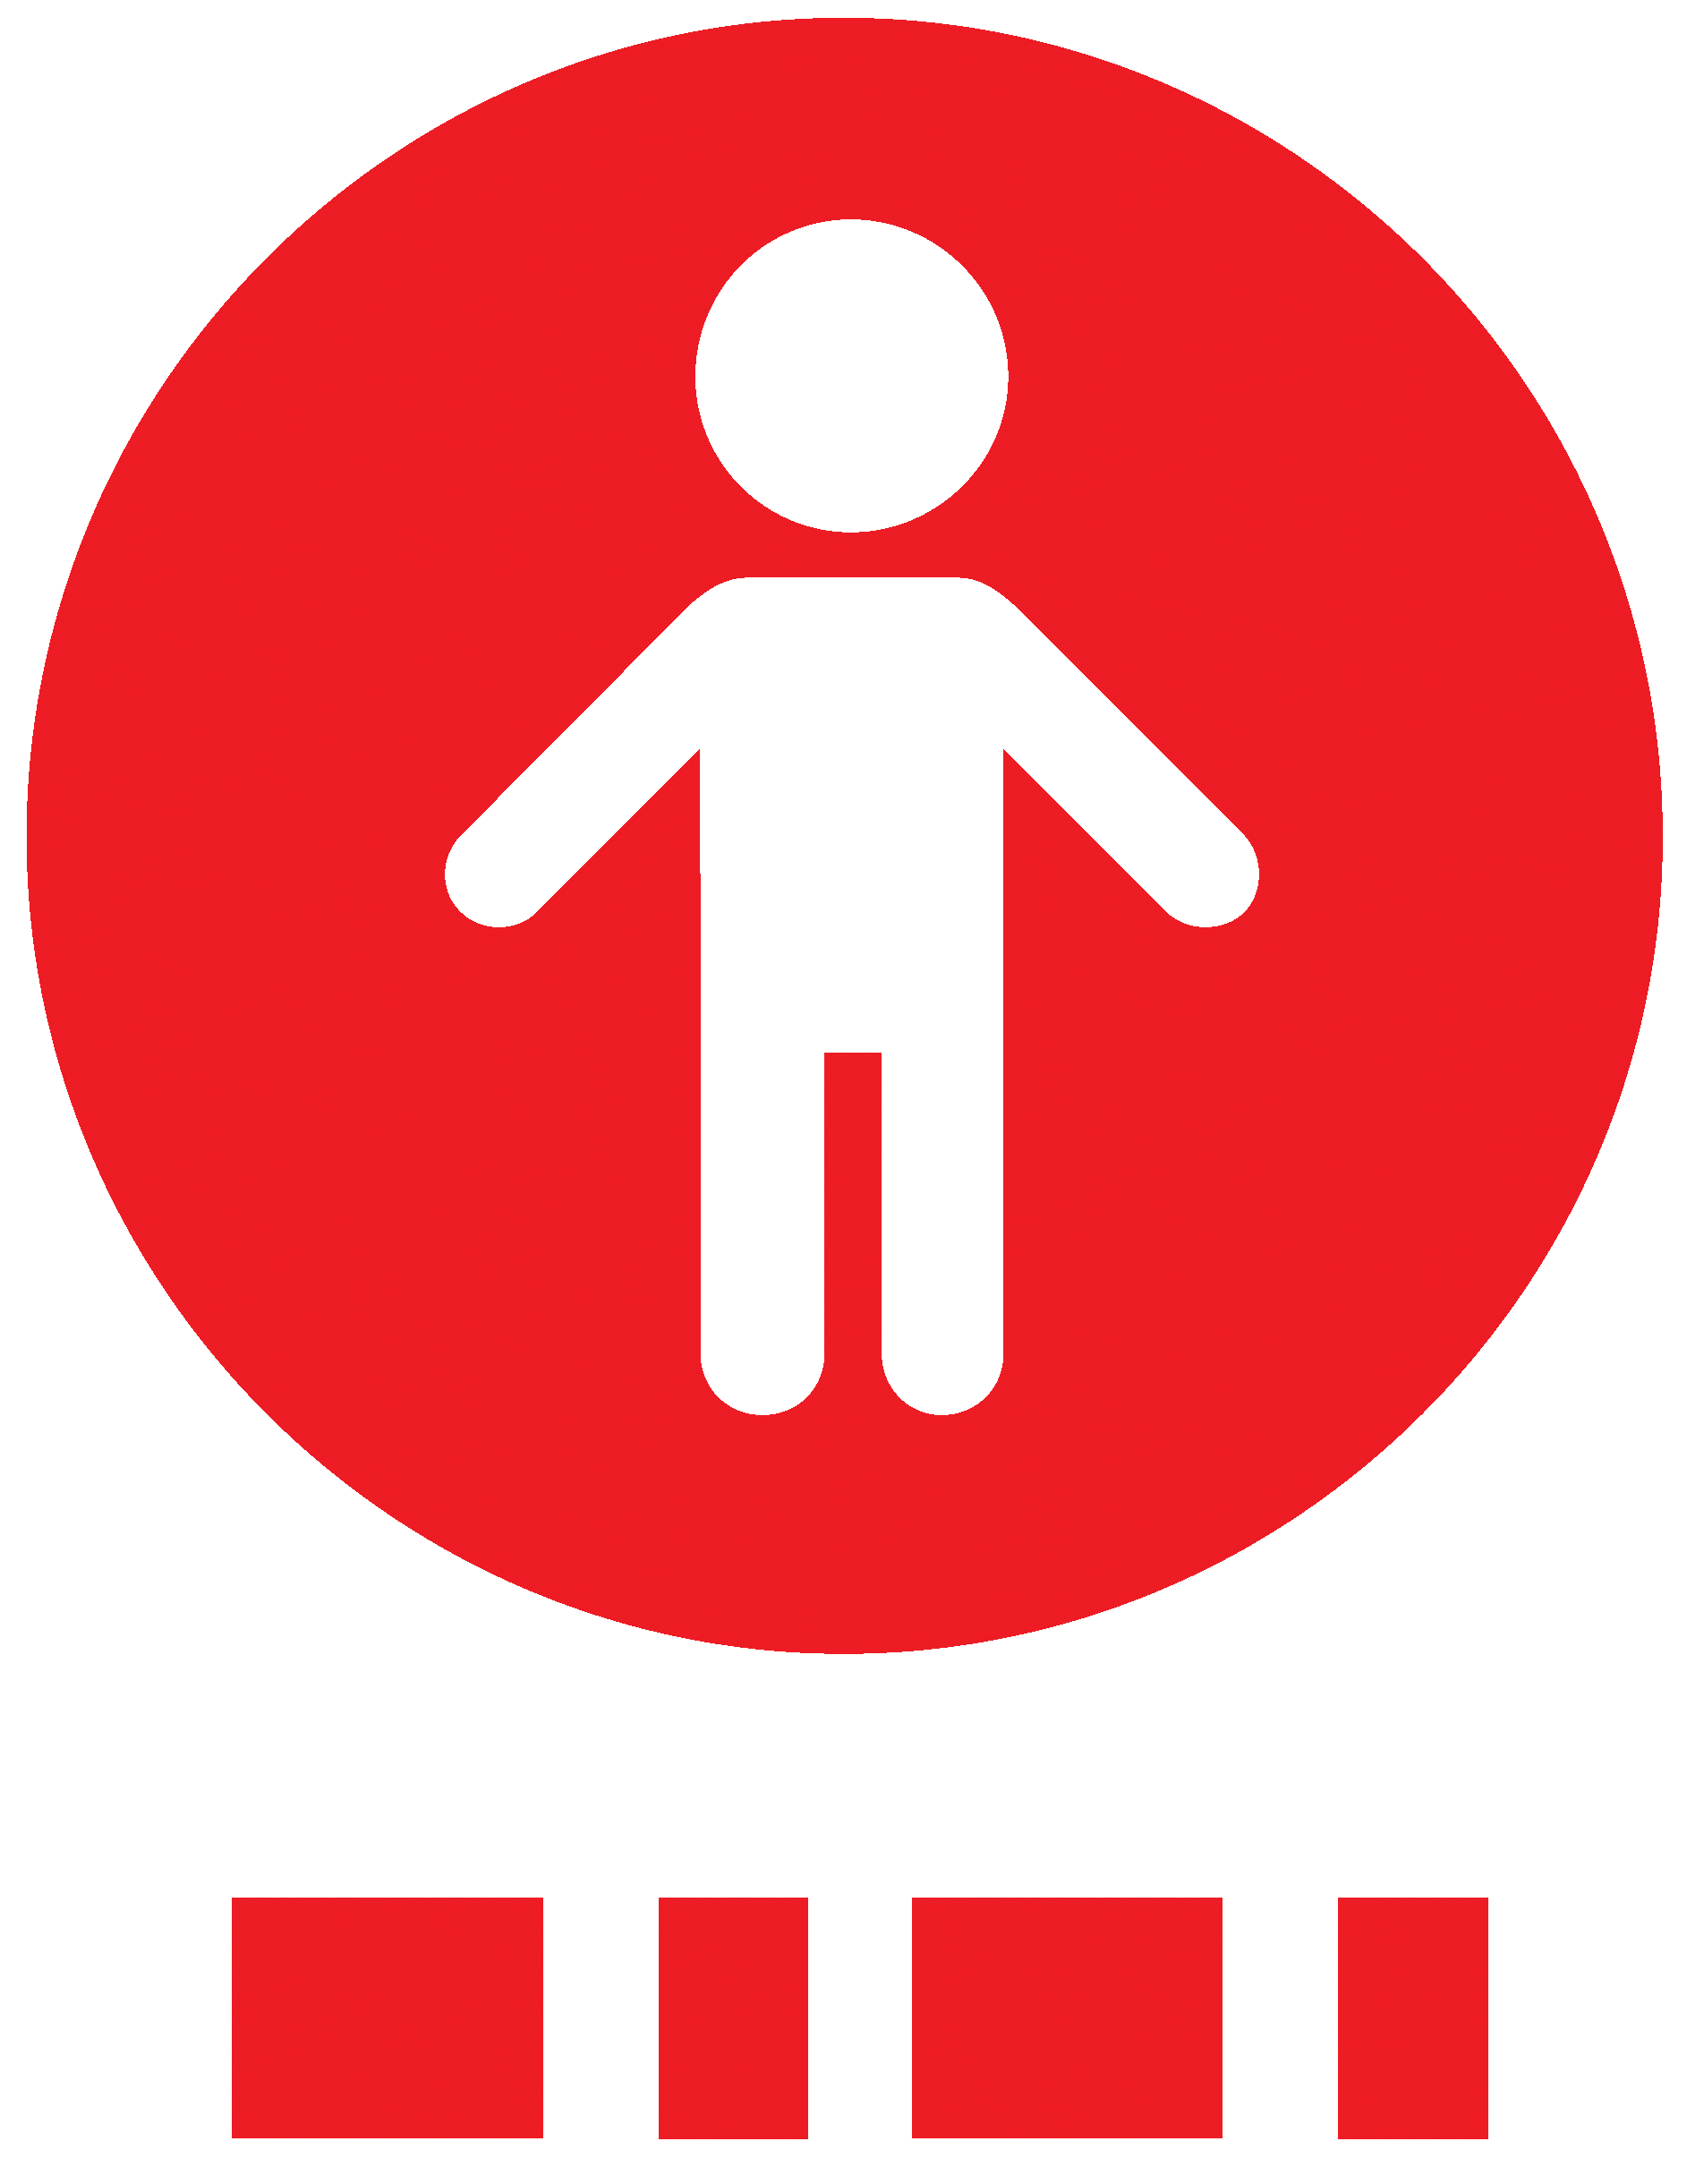 Mama logo